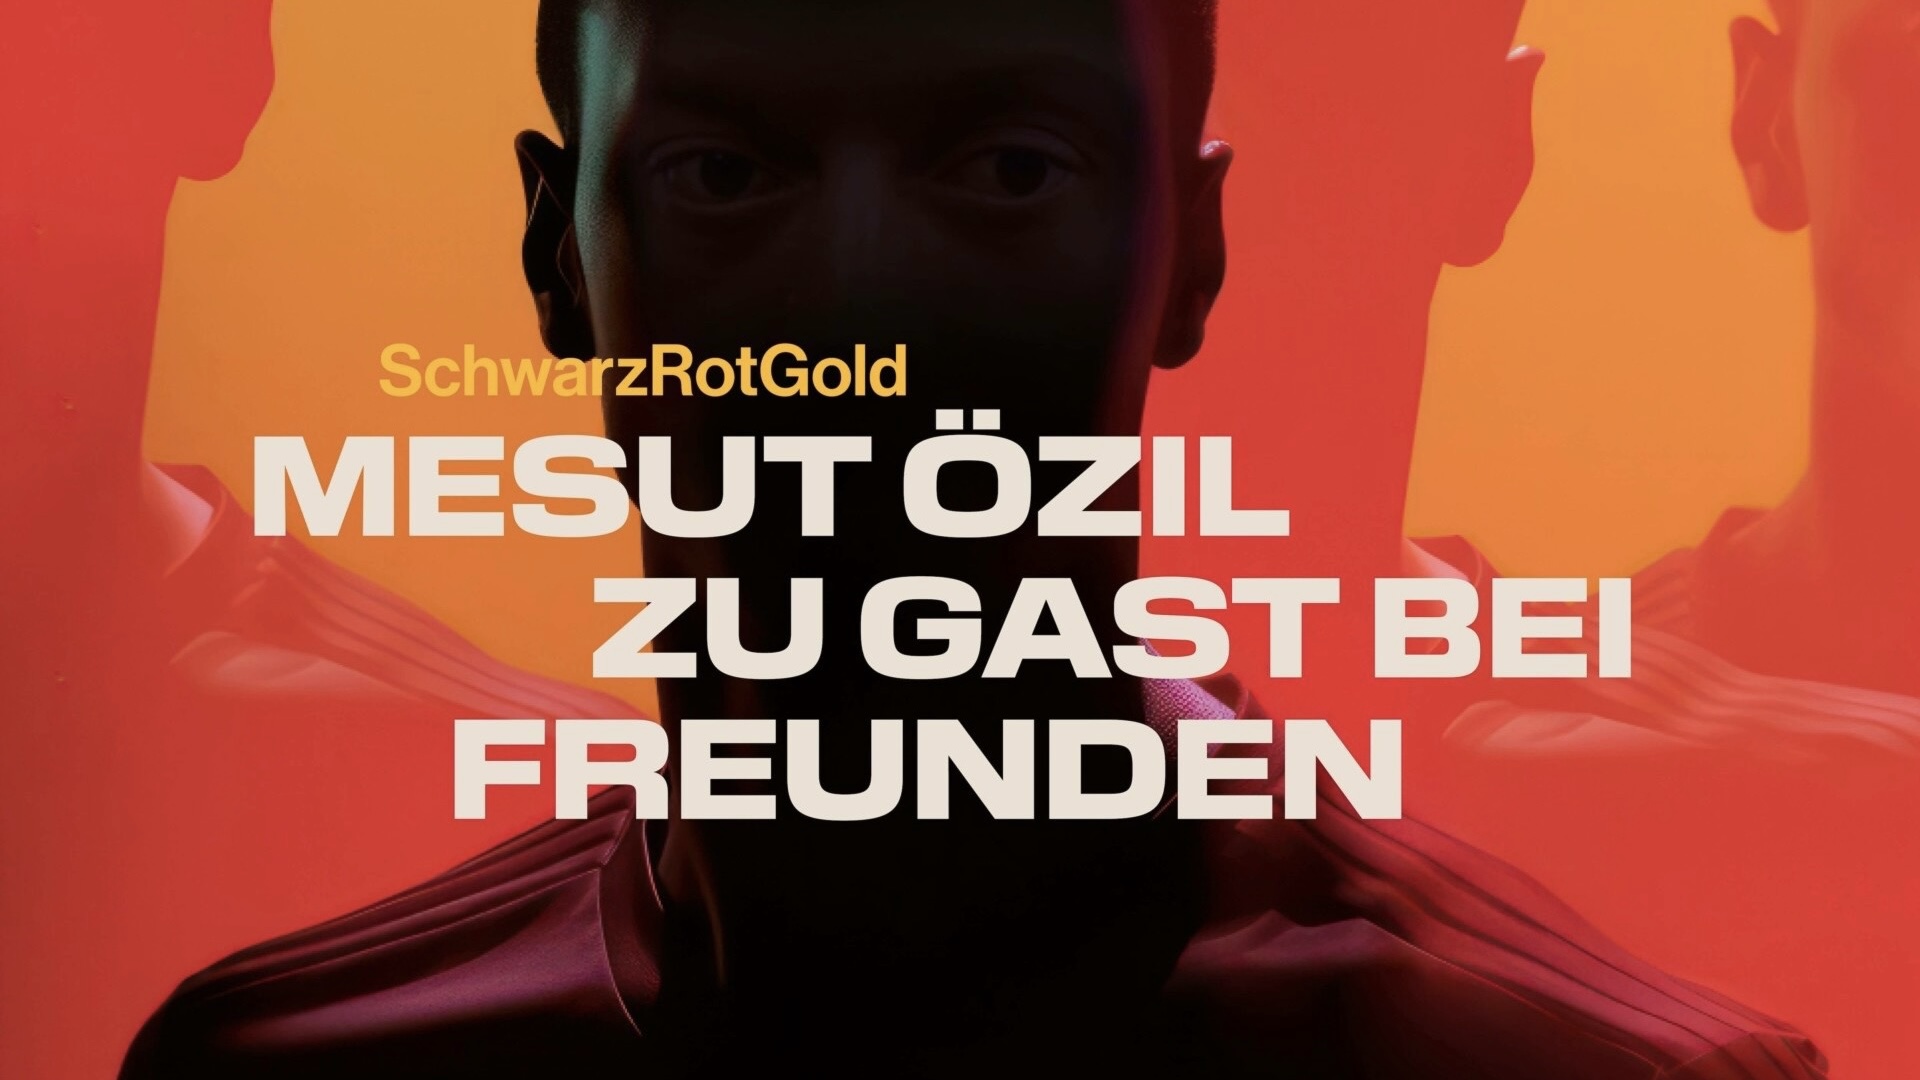 Das Cover des Podcasts SchwarzRotGold: Mesut Özil zu Gast bei Freunden. Das Gesicht eines Mannes, verdunkelt, auf rotem graphischen Hintergrund.